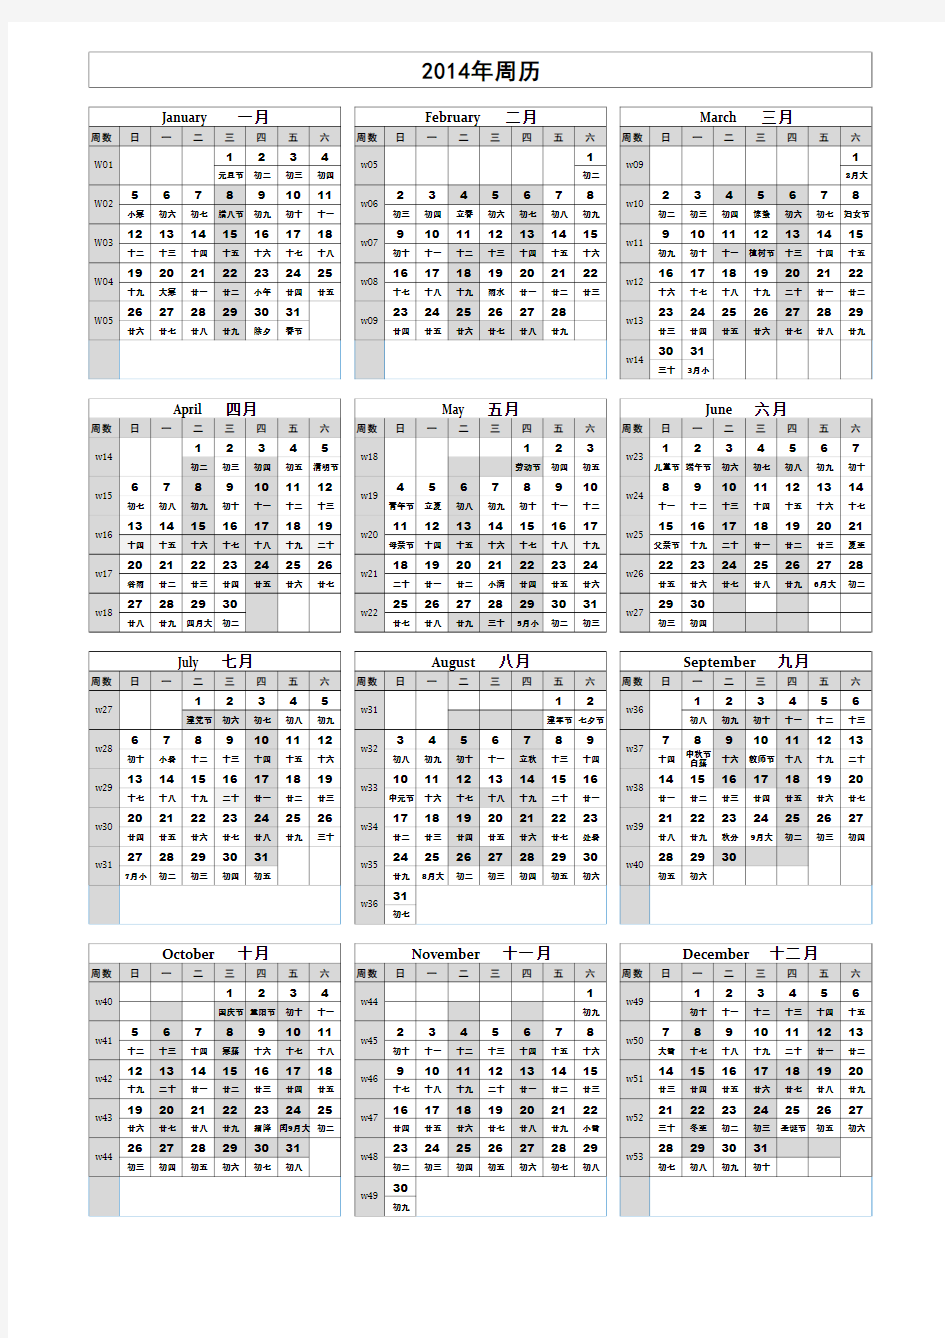 全新2014年周历日历(一张纸_含节气假日周数等)